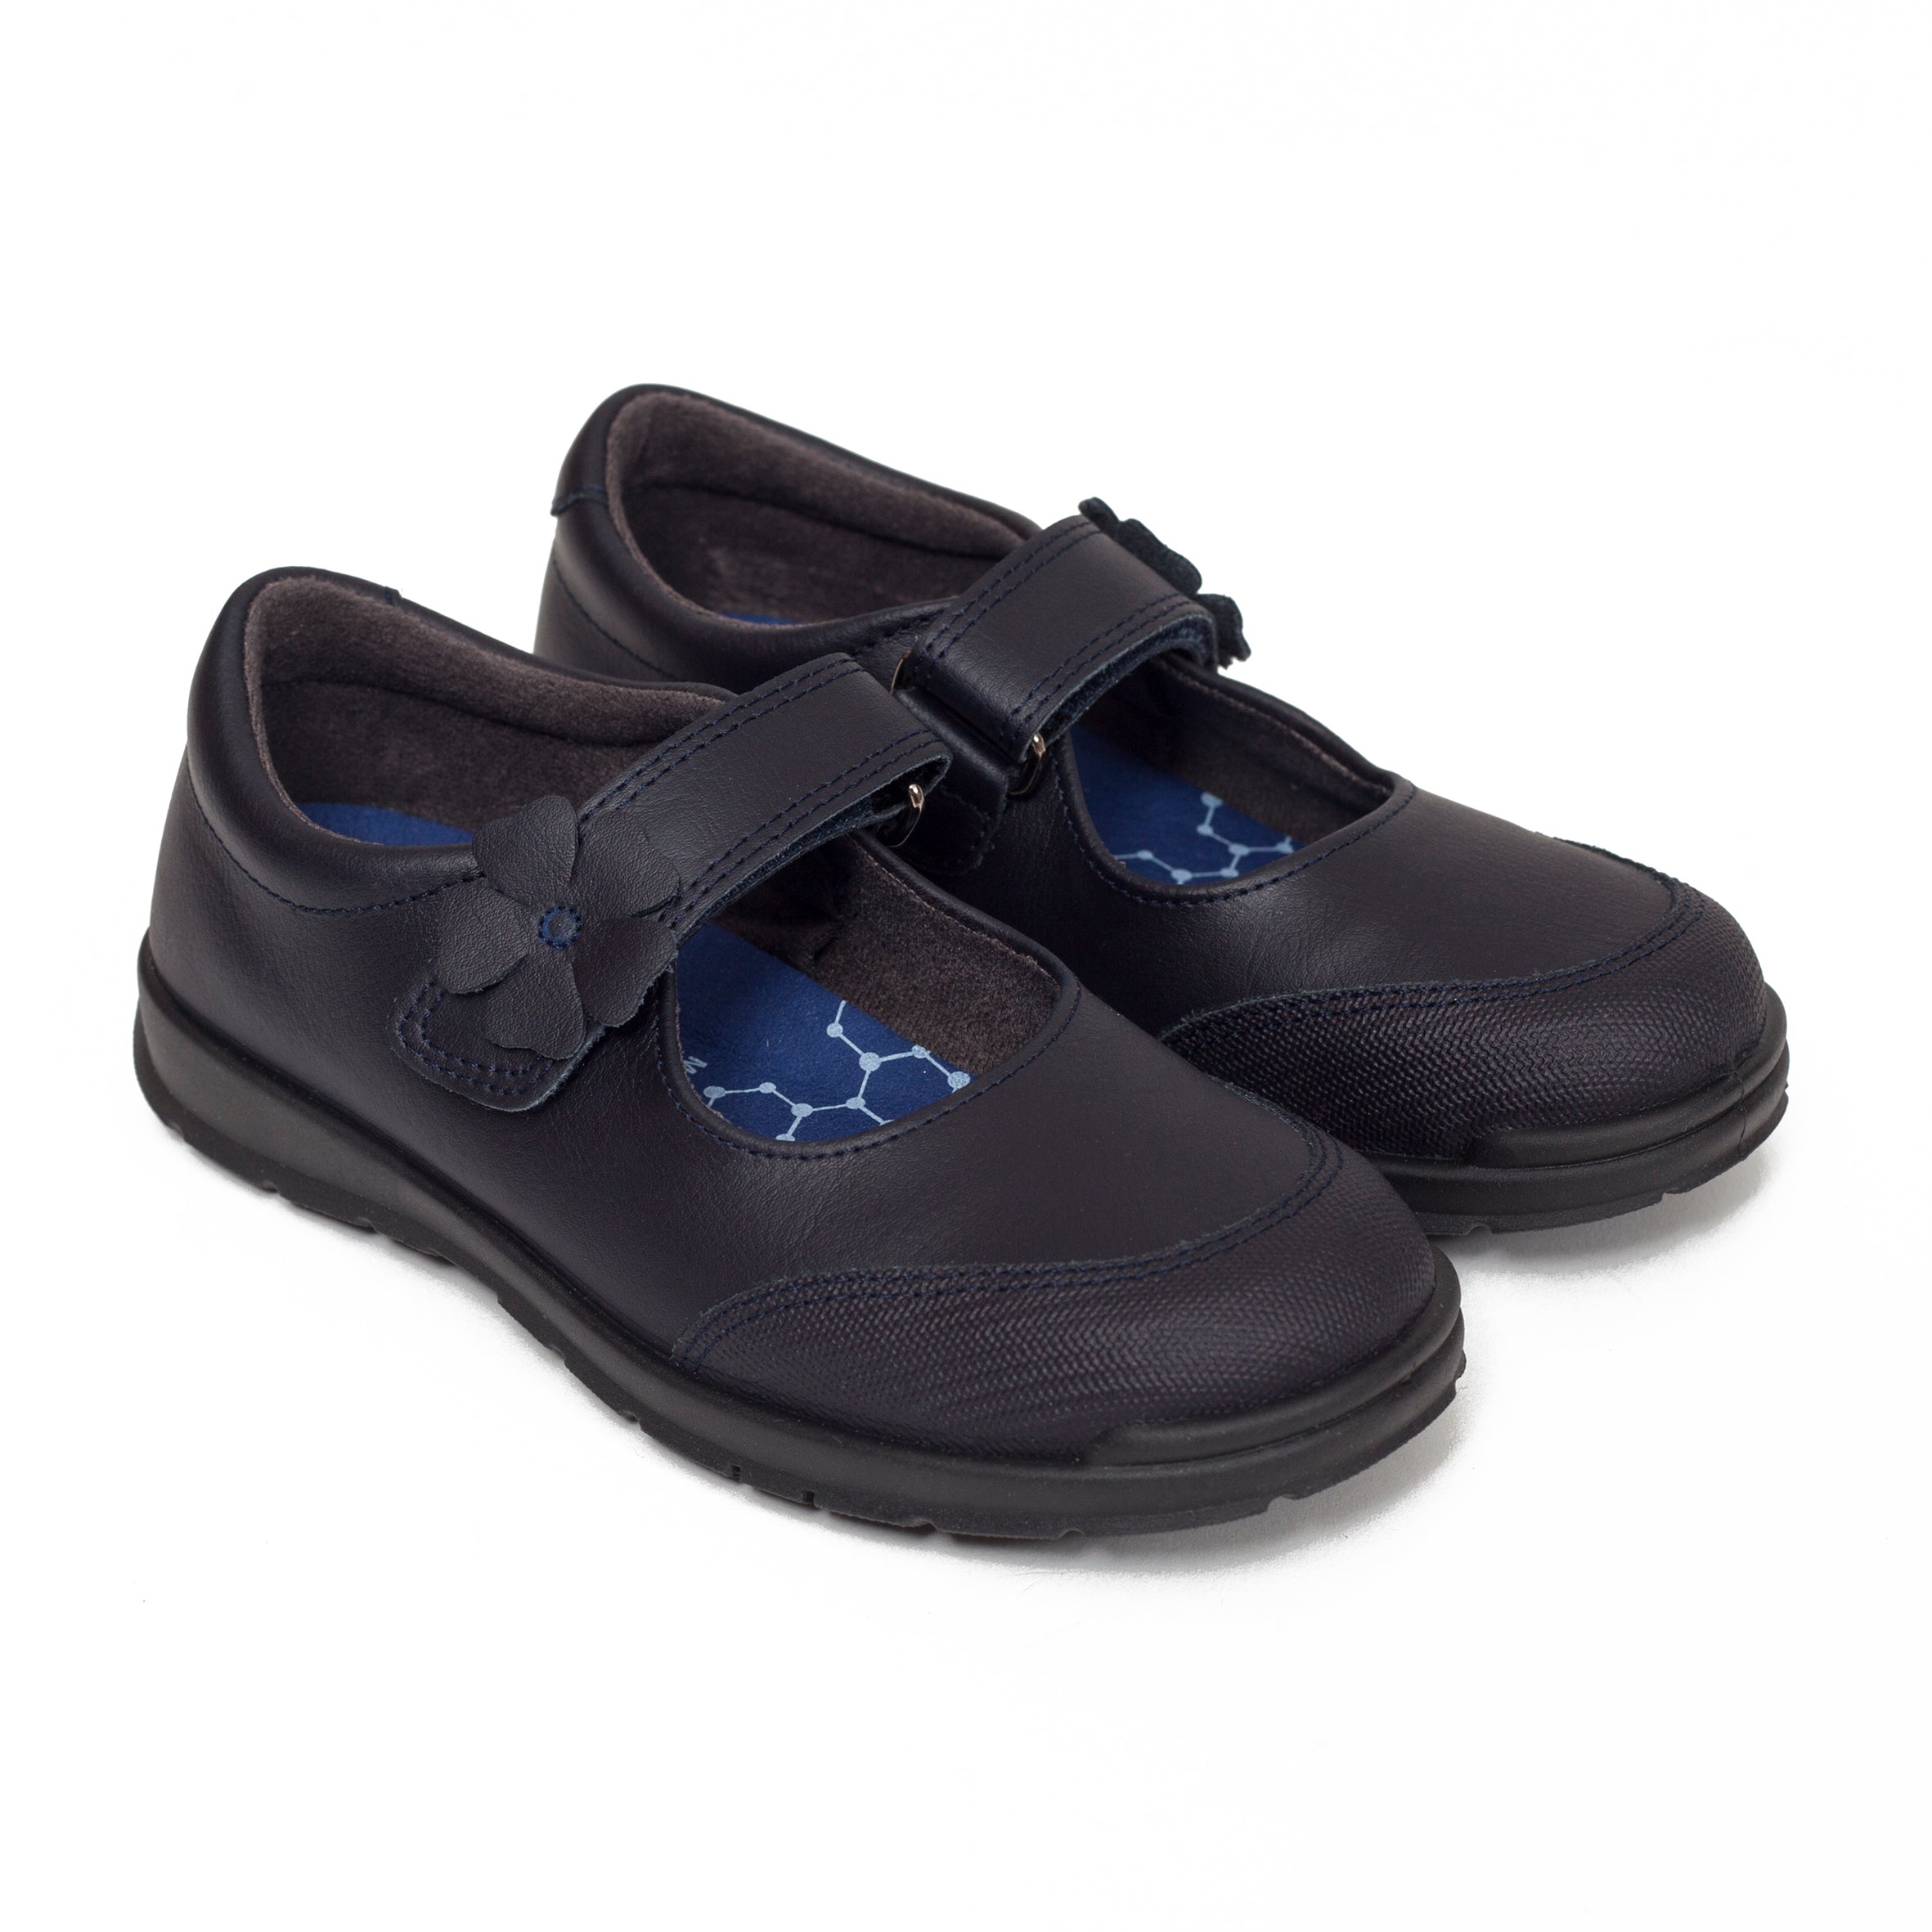 Zapatos colegiales niña Merceditas azul marino para uniforme de colegio 